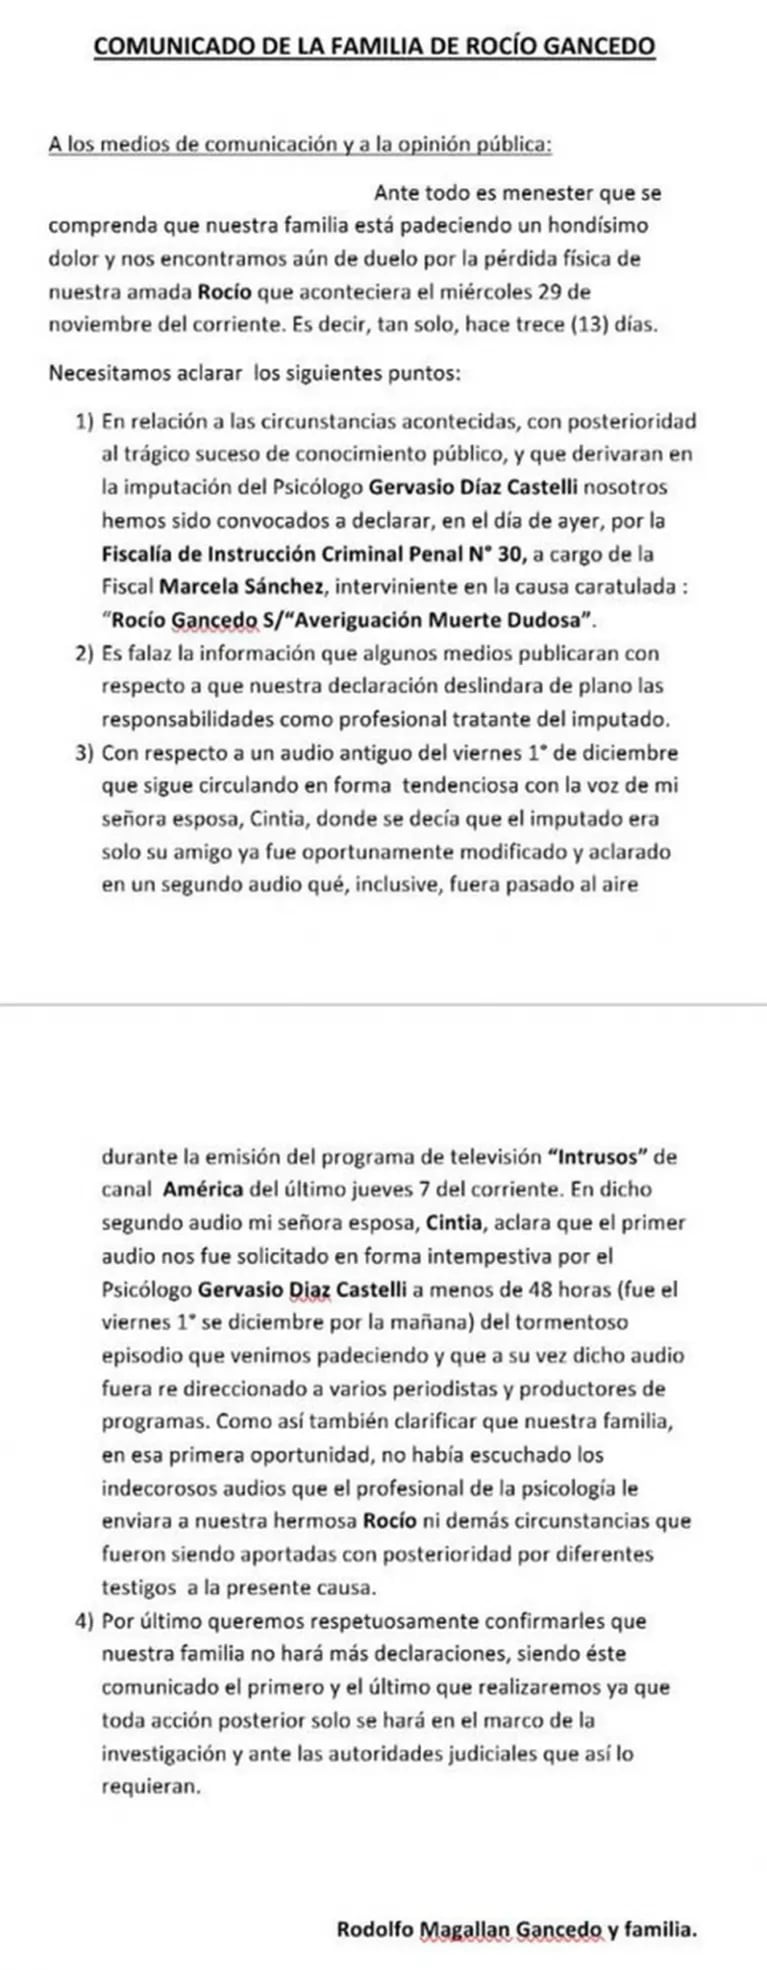 El comunicado de la familia de Rocío Gancedo sobre Gervasio Díaz Castelli